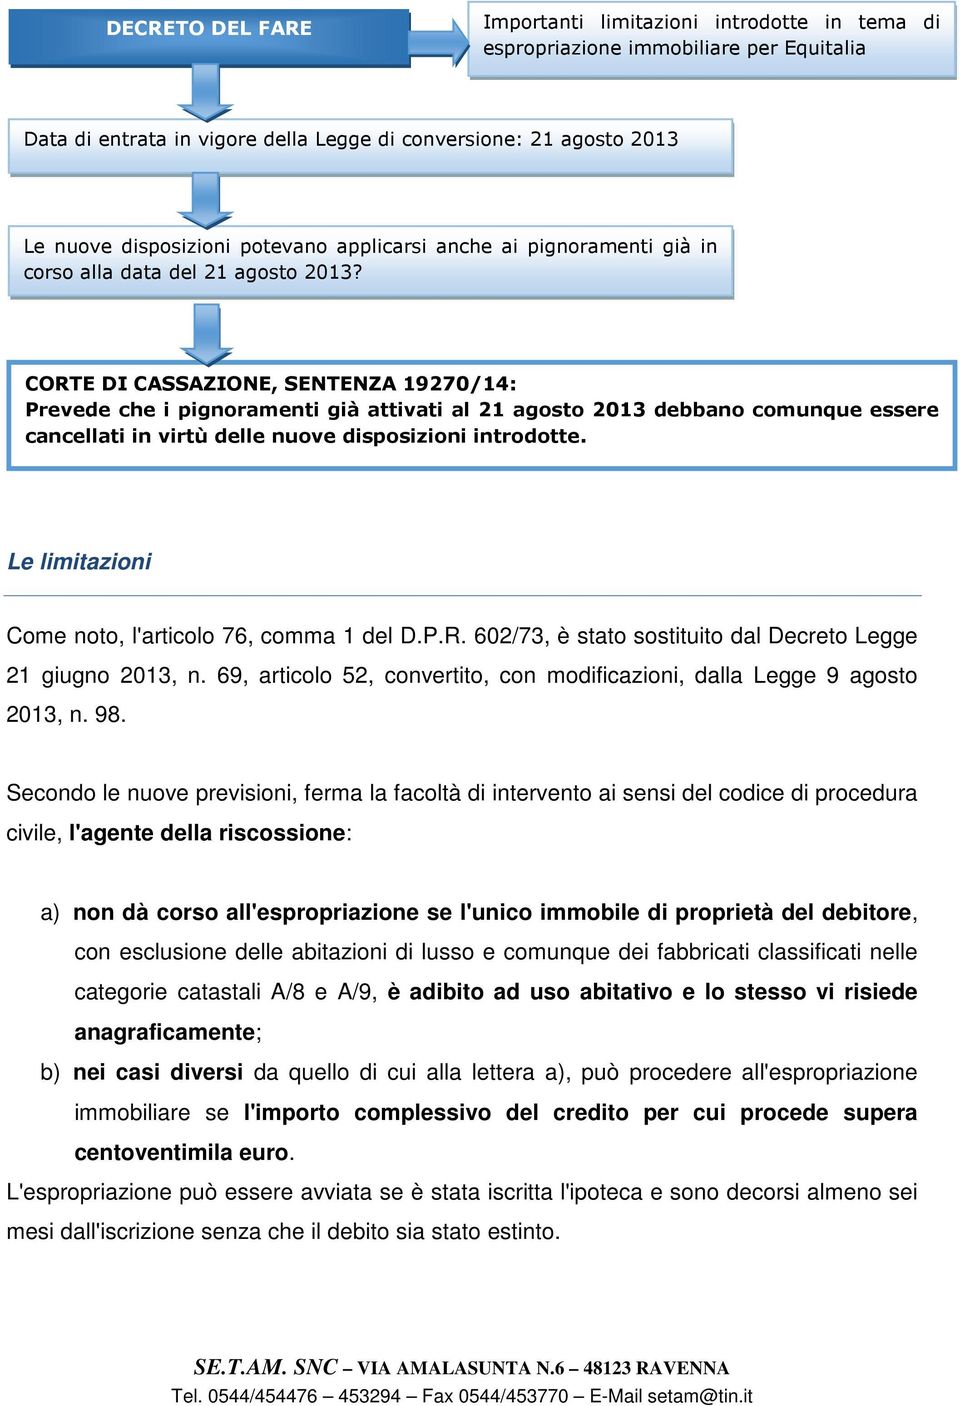 CORTE DI CASSAZIONE, SENTENZA 19270/14: Prevede che i pignoramenti già attivati al 21 agosto 2013 debbano comunque essere cancellati in virtù delle nuove disposizioni introdotte.